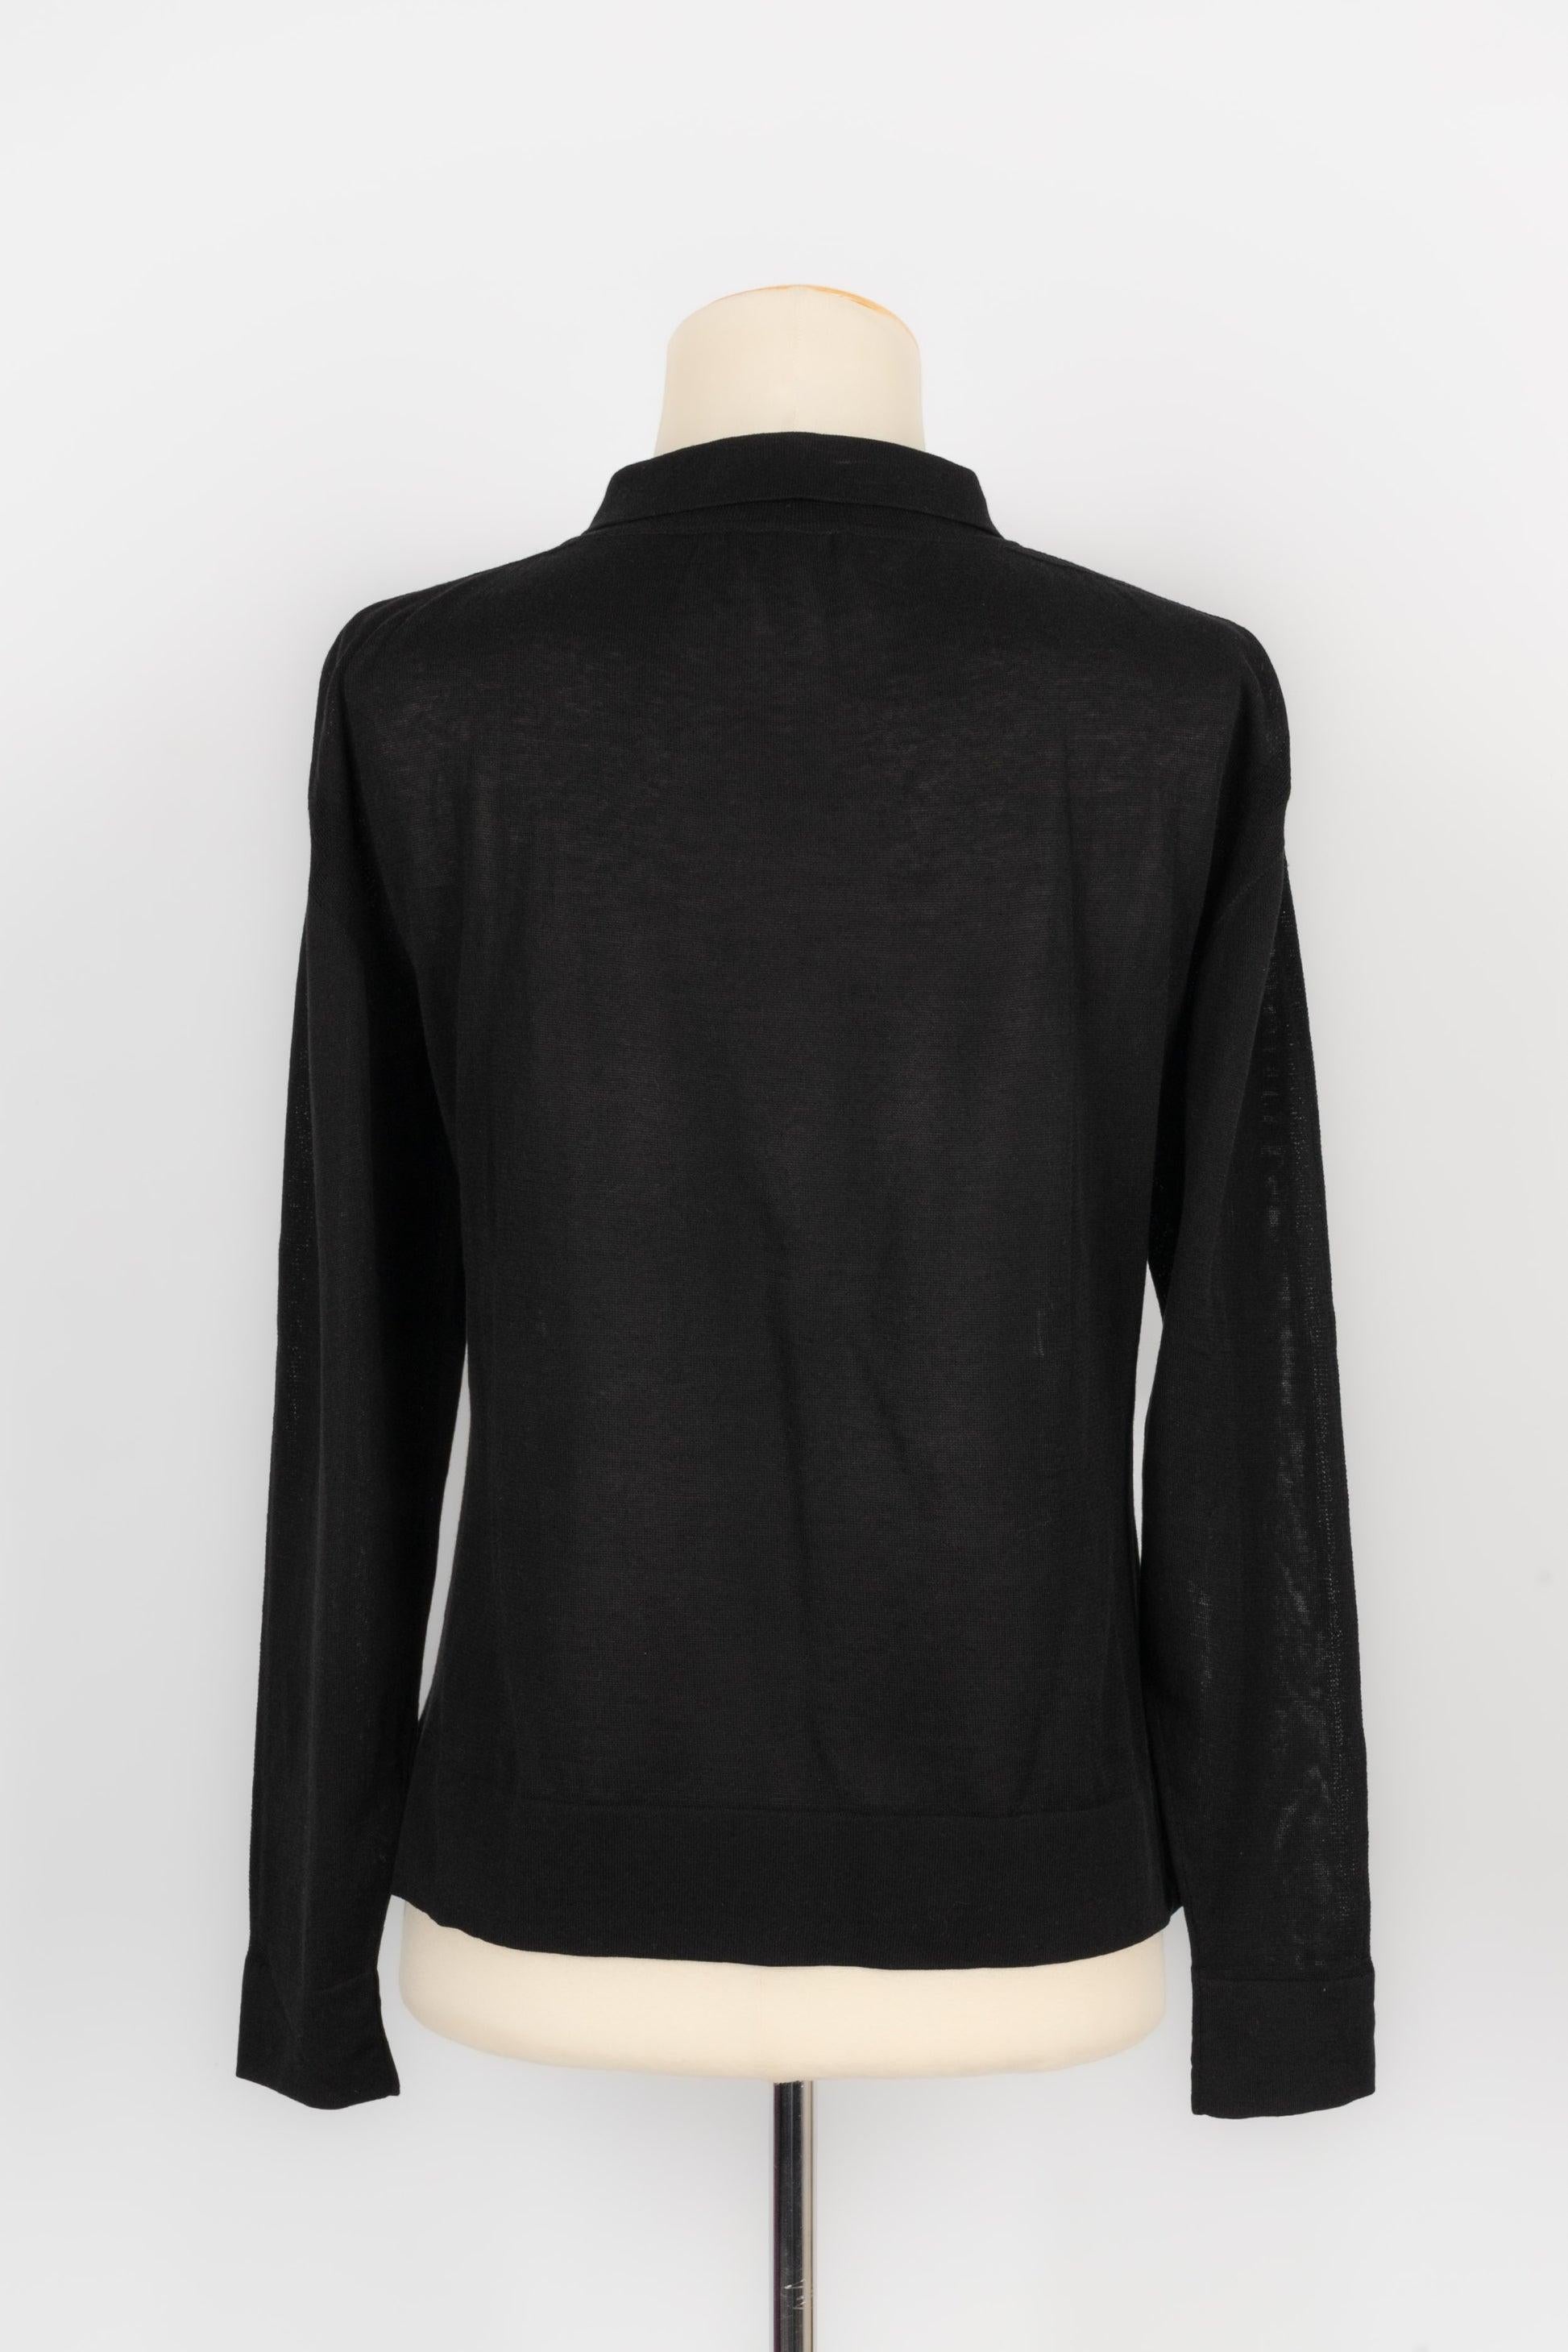 Chanel Black Mesh Top In Excellent Condition For Sale In SAINT-OUEN-SUR-SEINE, FR